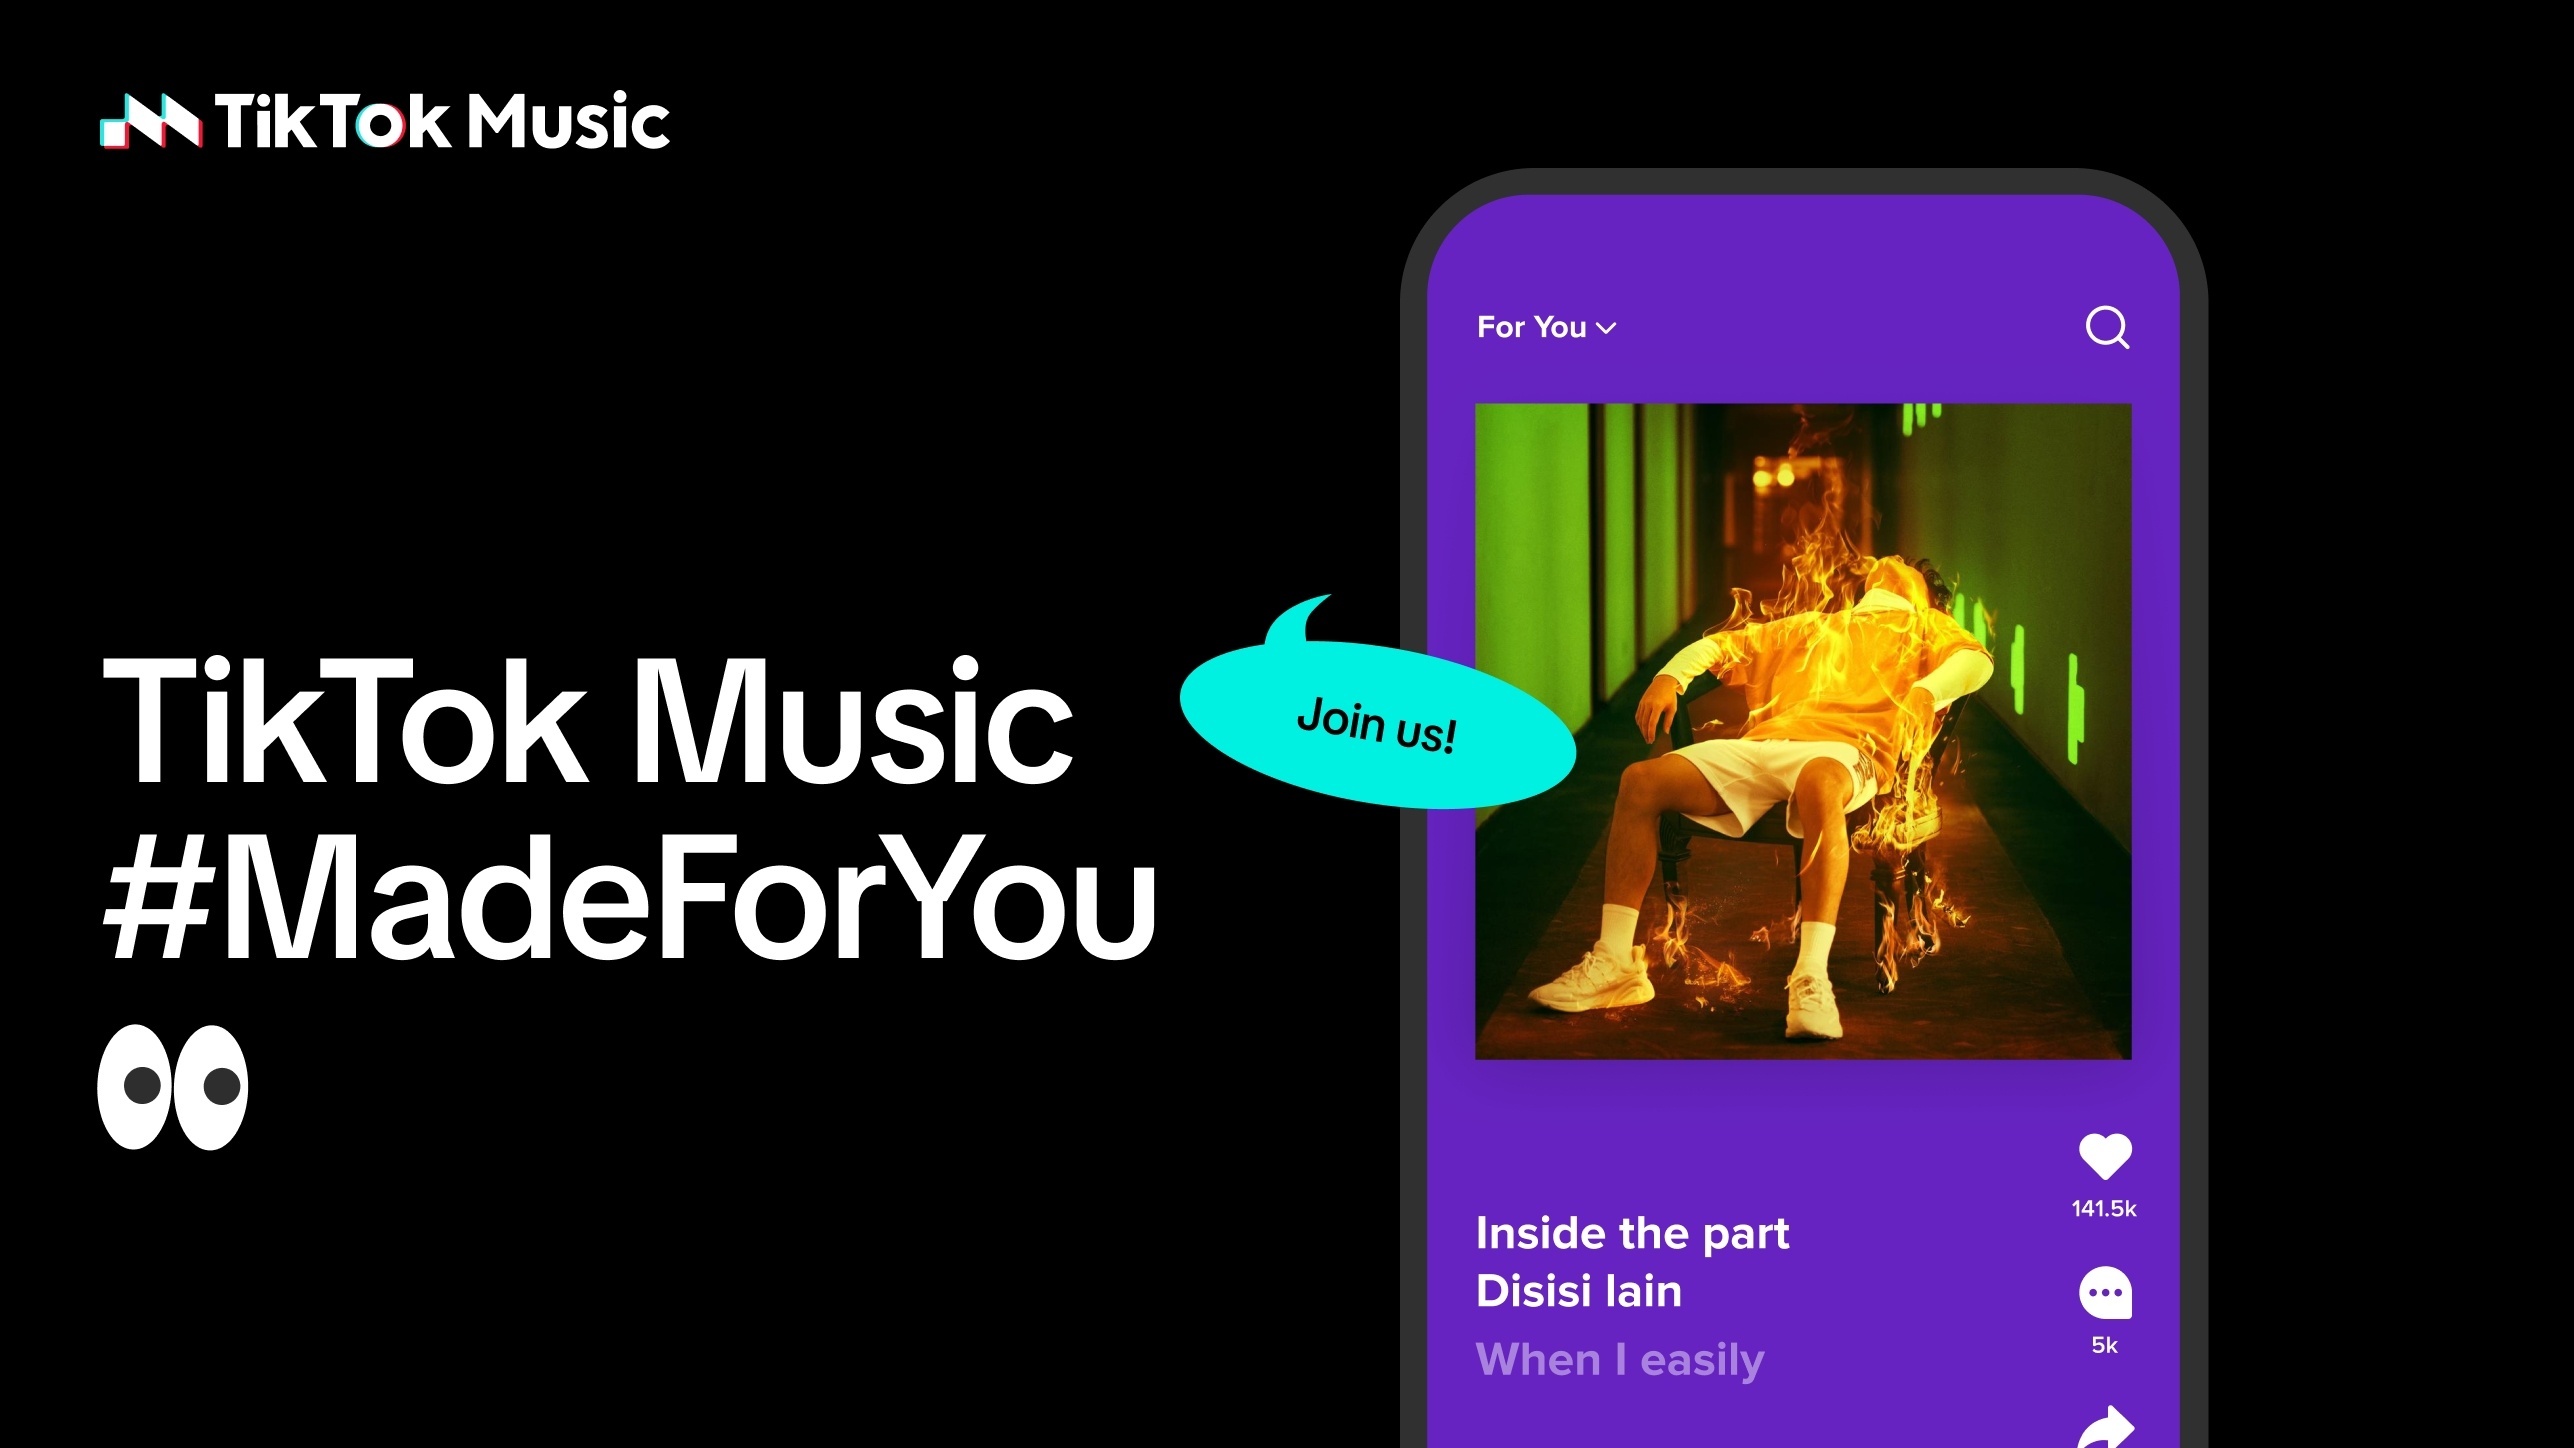 #Konkurrenz für Spotify und Apple Music? Der Tiktok Musik-Streaming-Dienst ist da – nur noch nicht bei uns